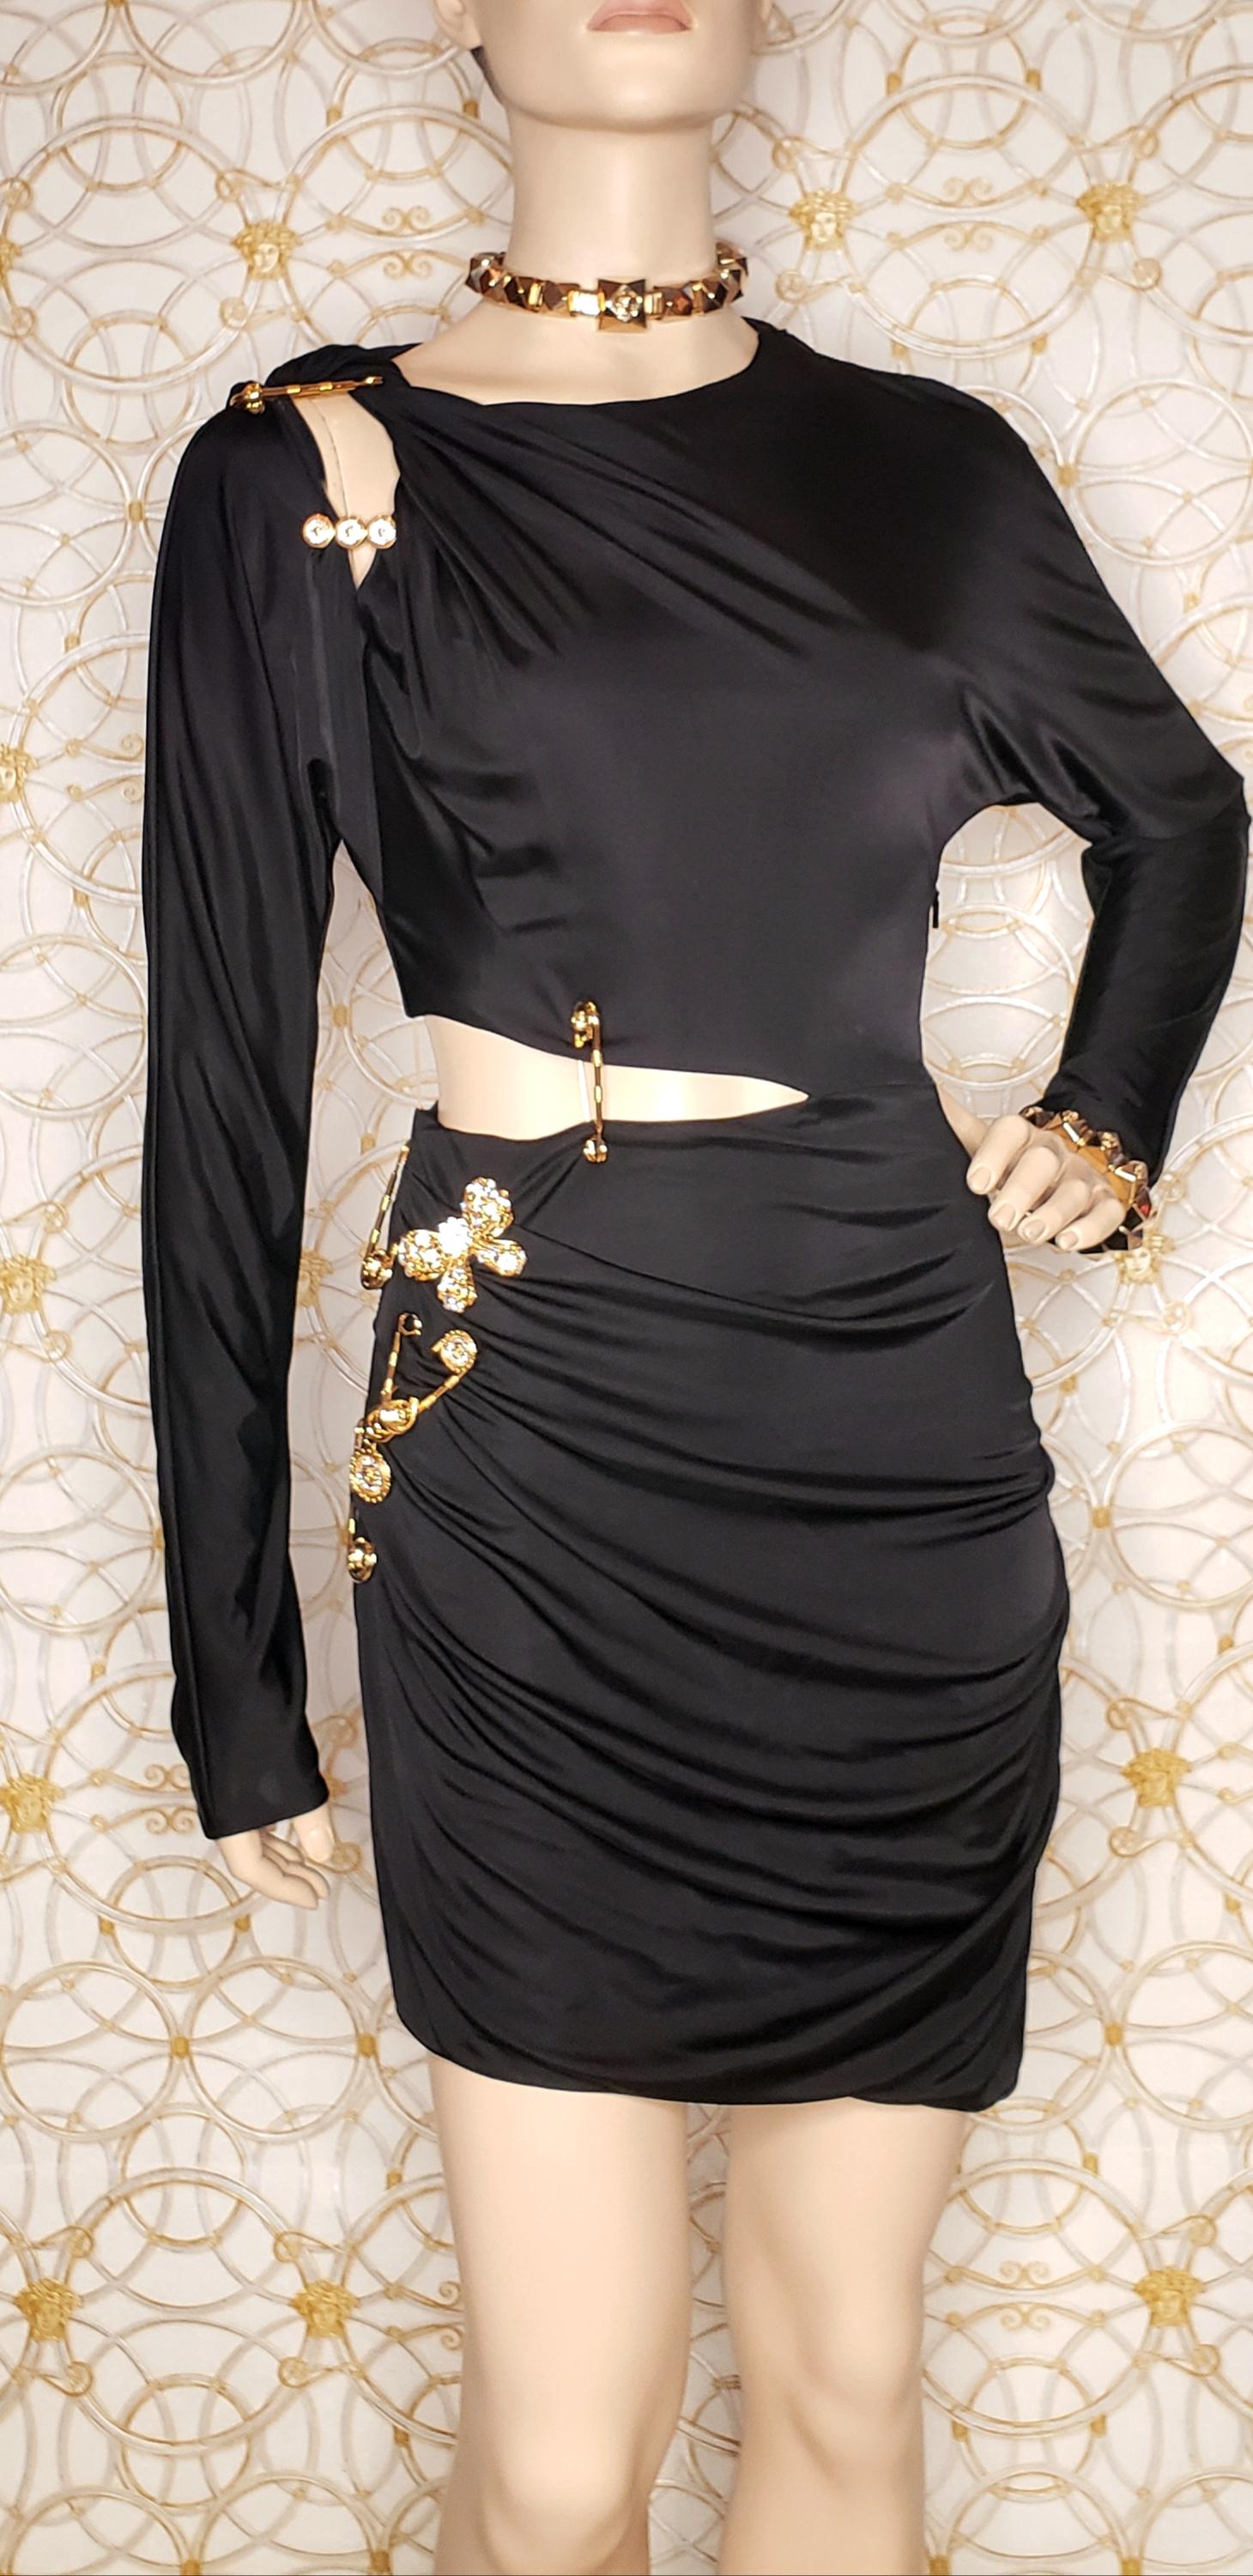  F/2019 look # 26 BLACK PIN UP KNIT COCKTAIL MINI Dress, IT 40 - US 4 - 6 5